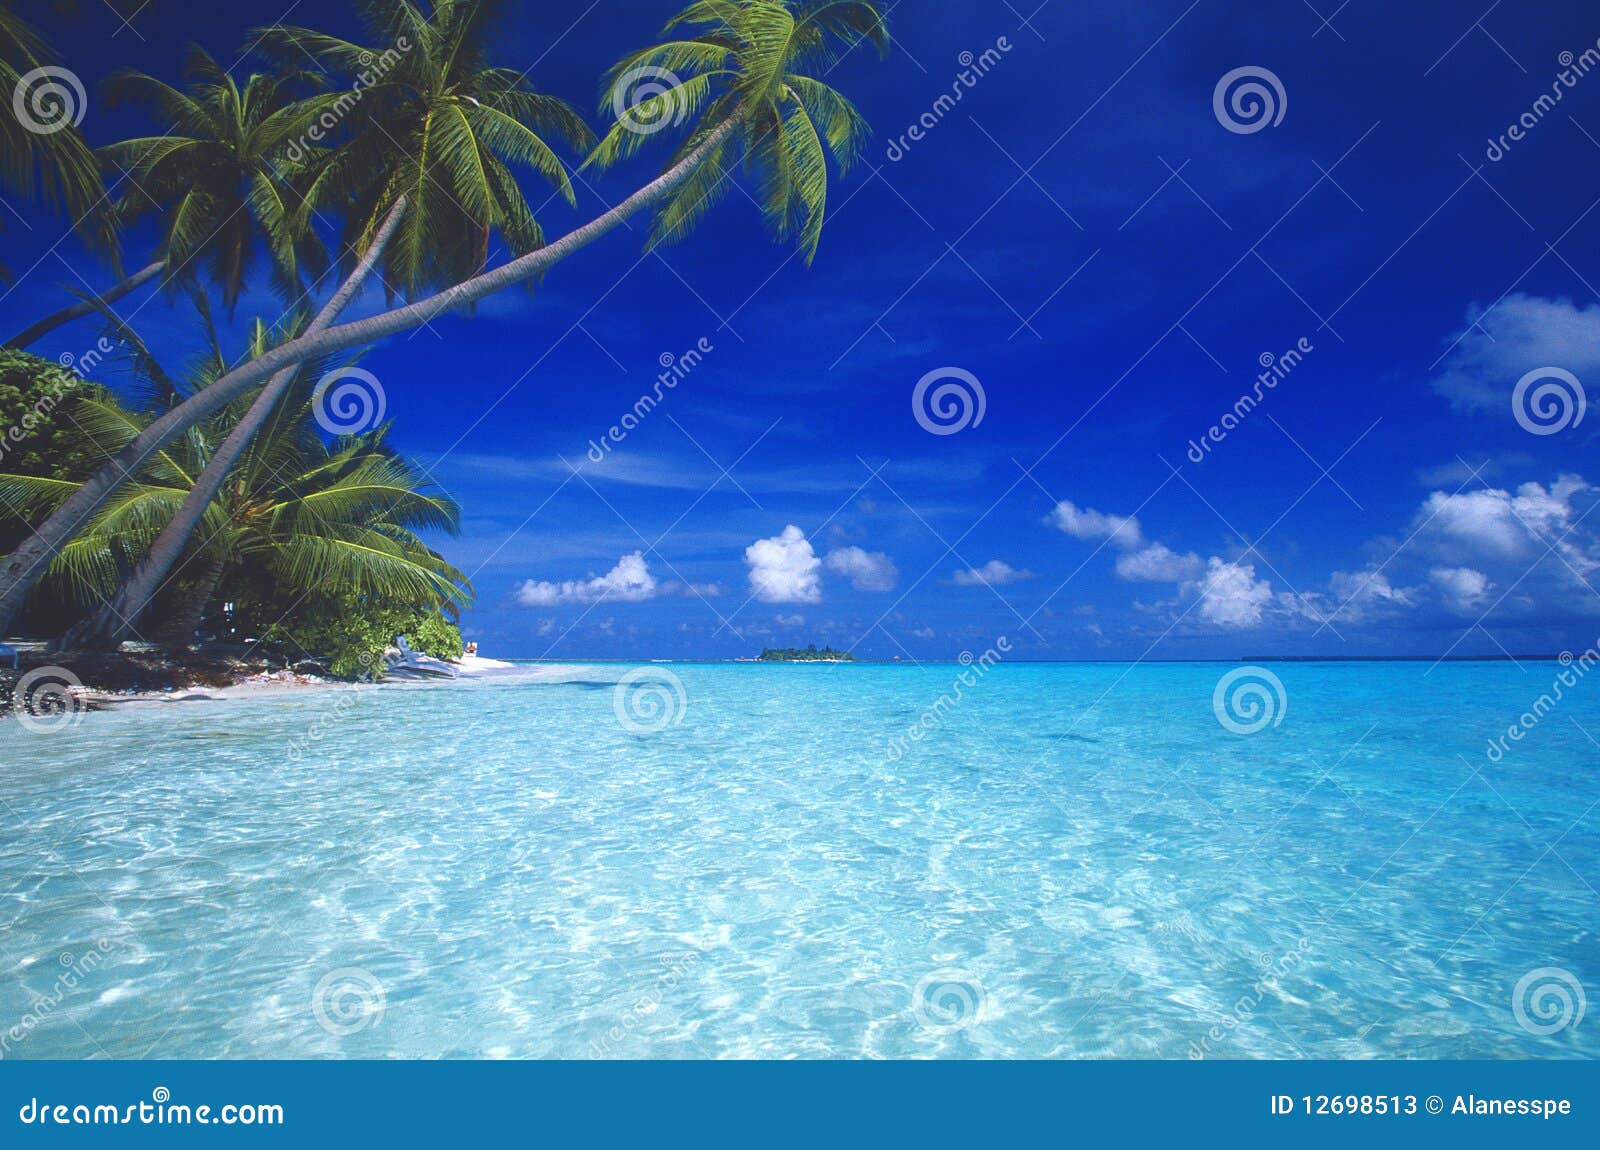 tropical beach maldives